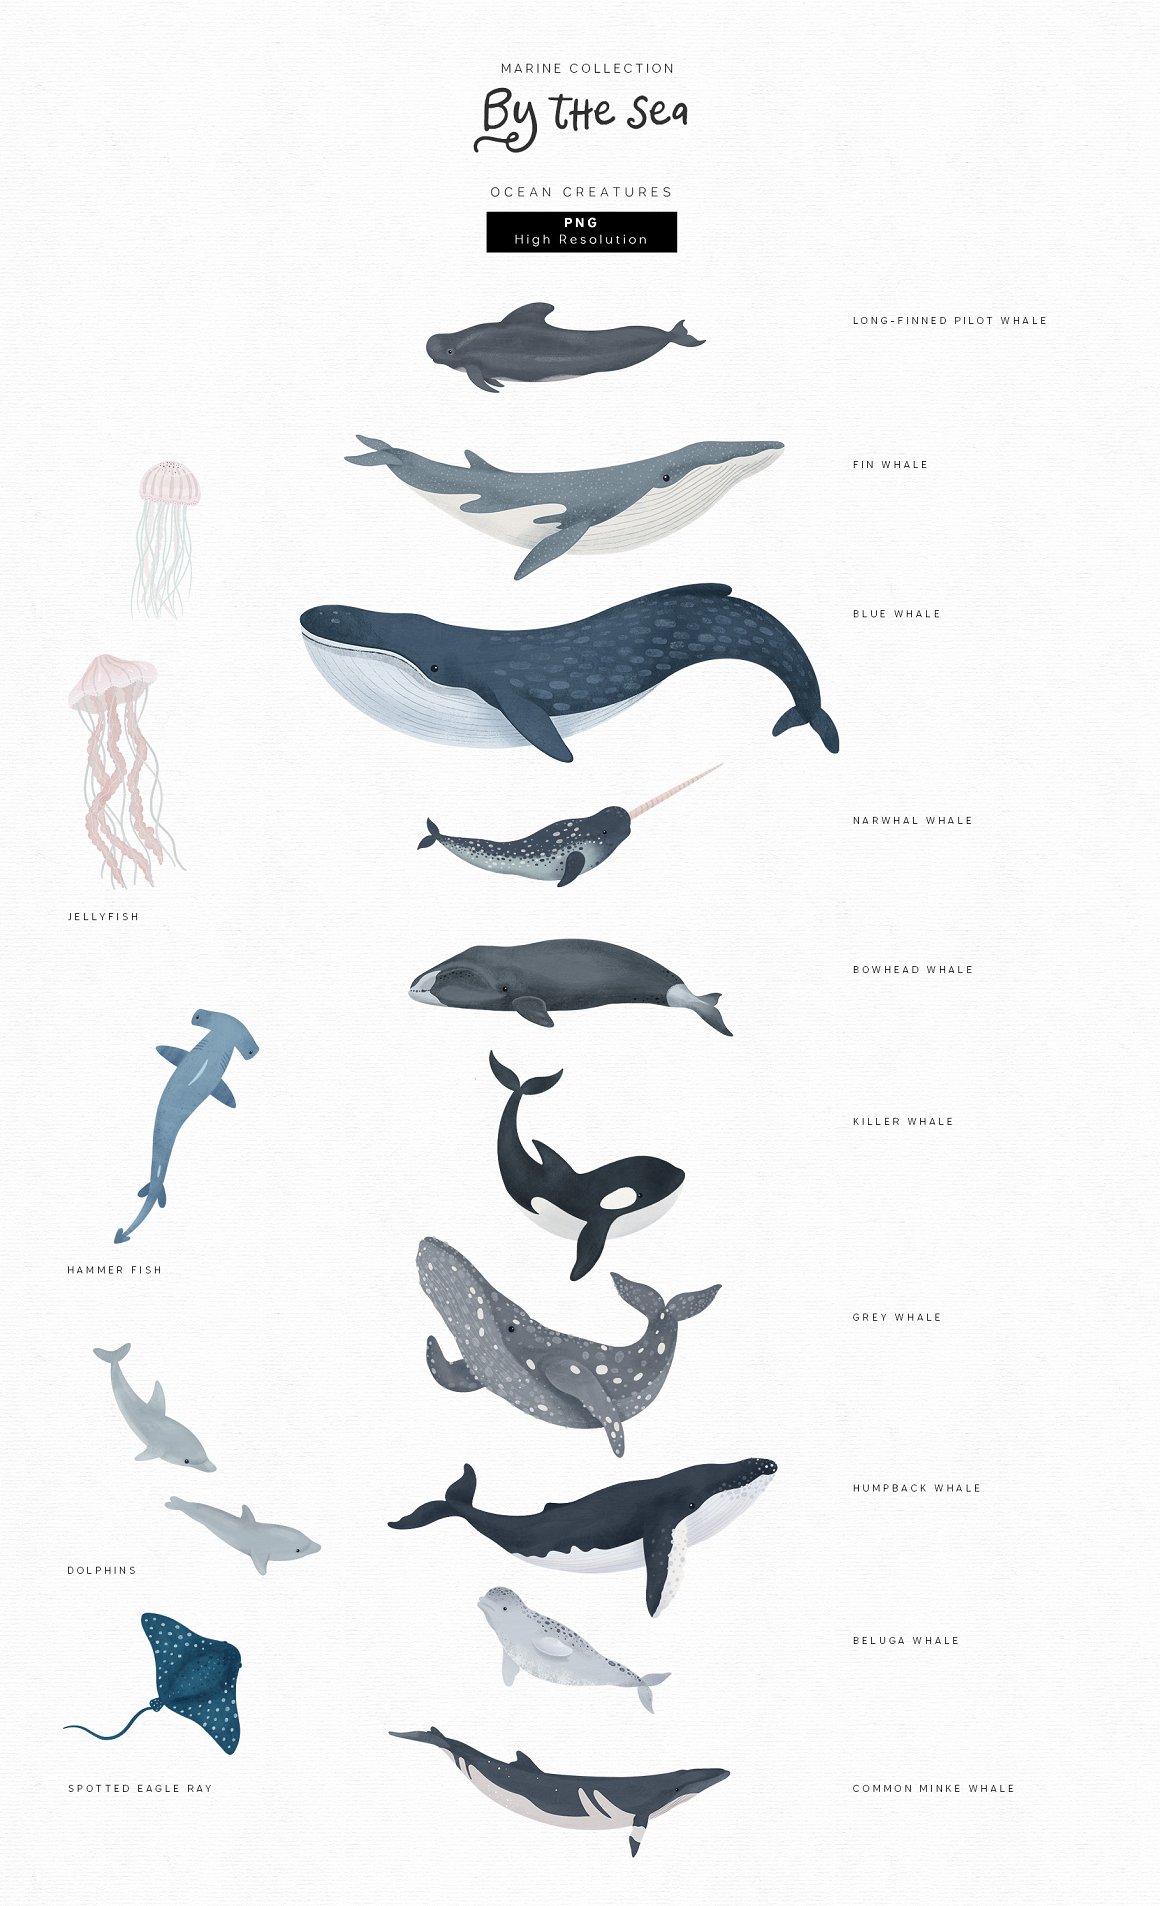 Variants of large marine inhabitants.